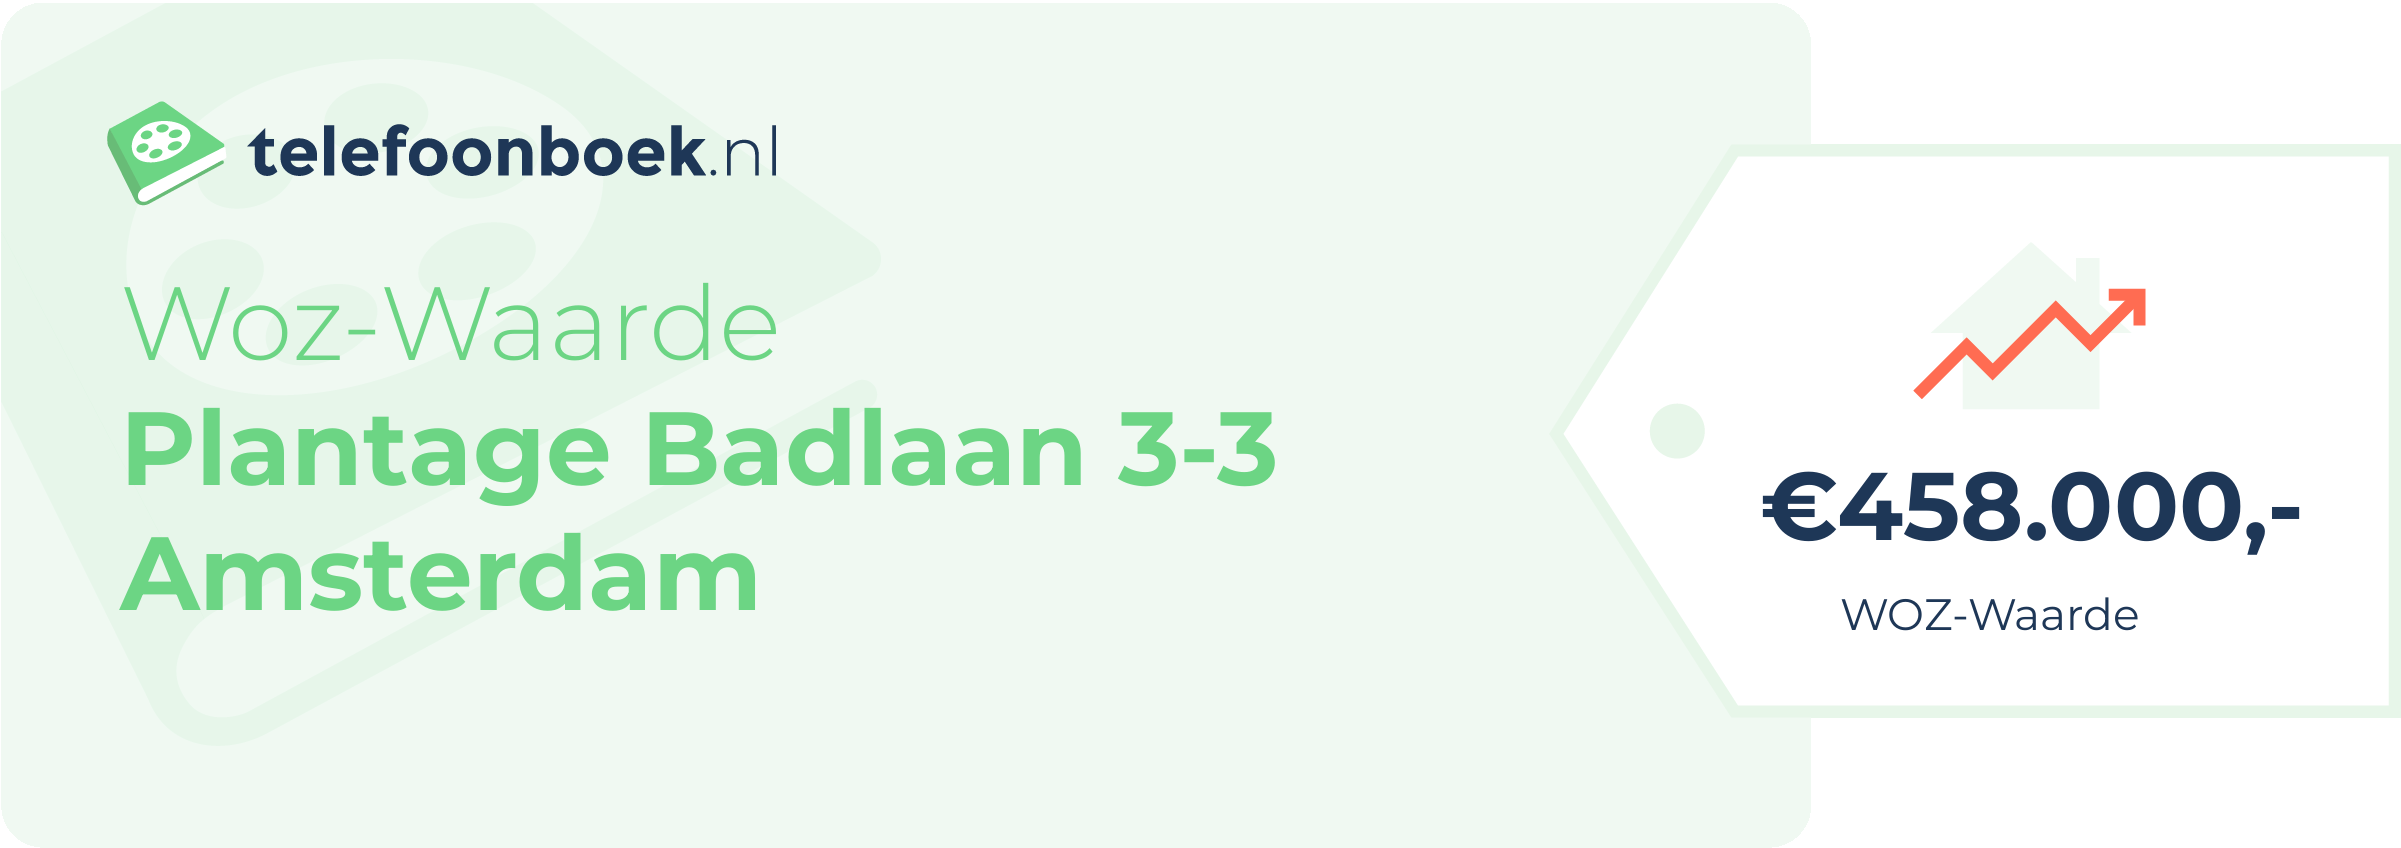 WOZ-waarde Plantage Badlaan 3-3 Amsterdam